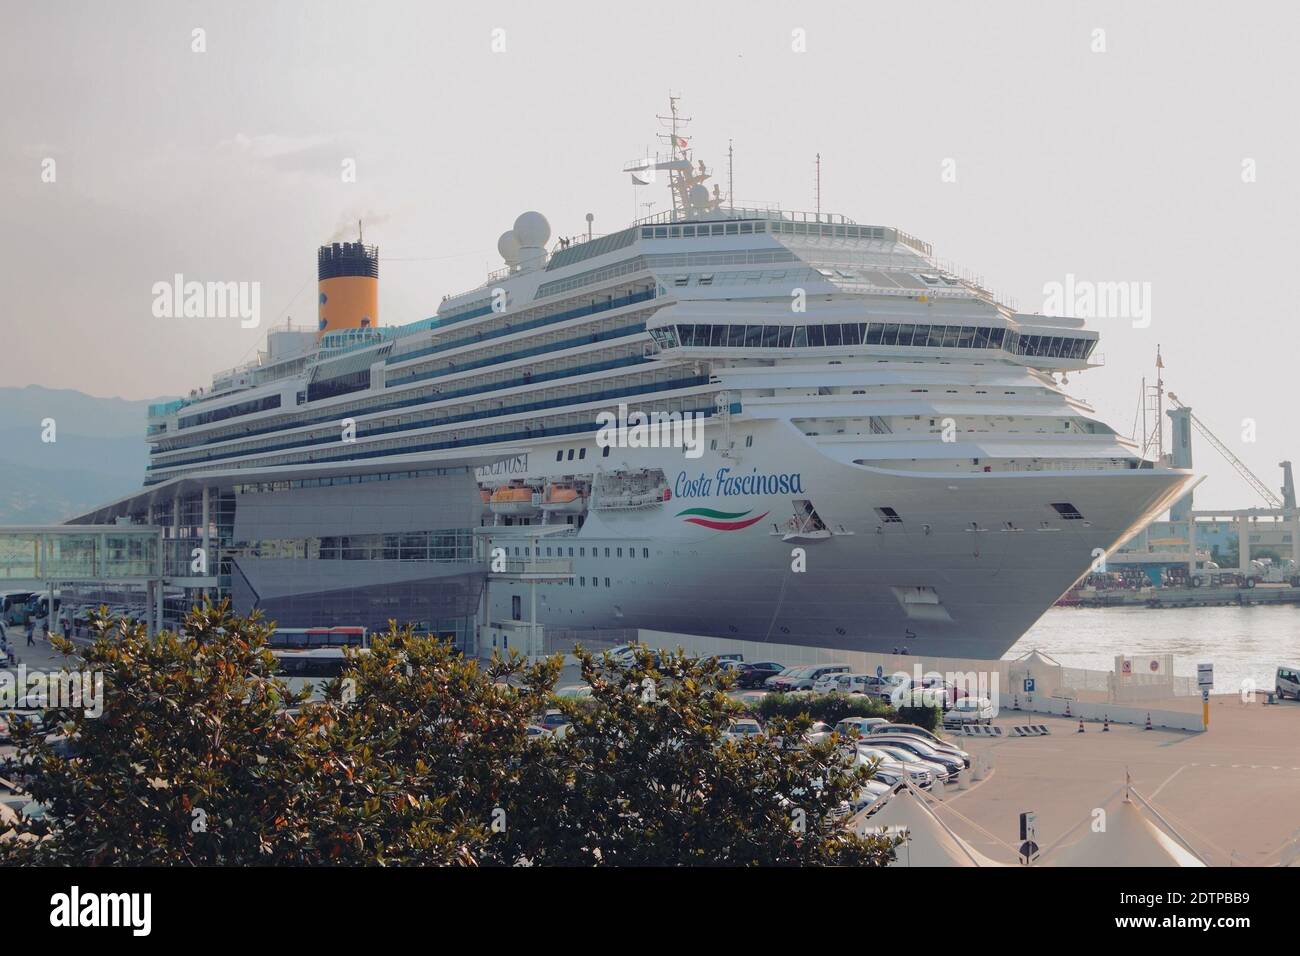 Savona, Italia - Jun 30, 2019: Crucero en amarre en el puerto Foto de stock